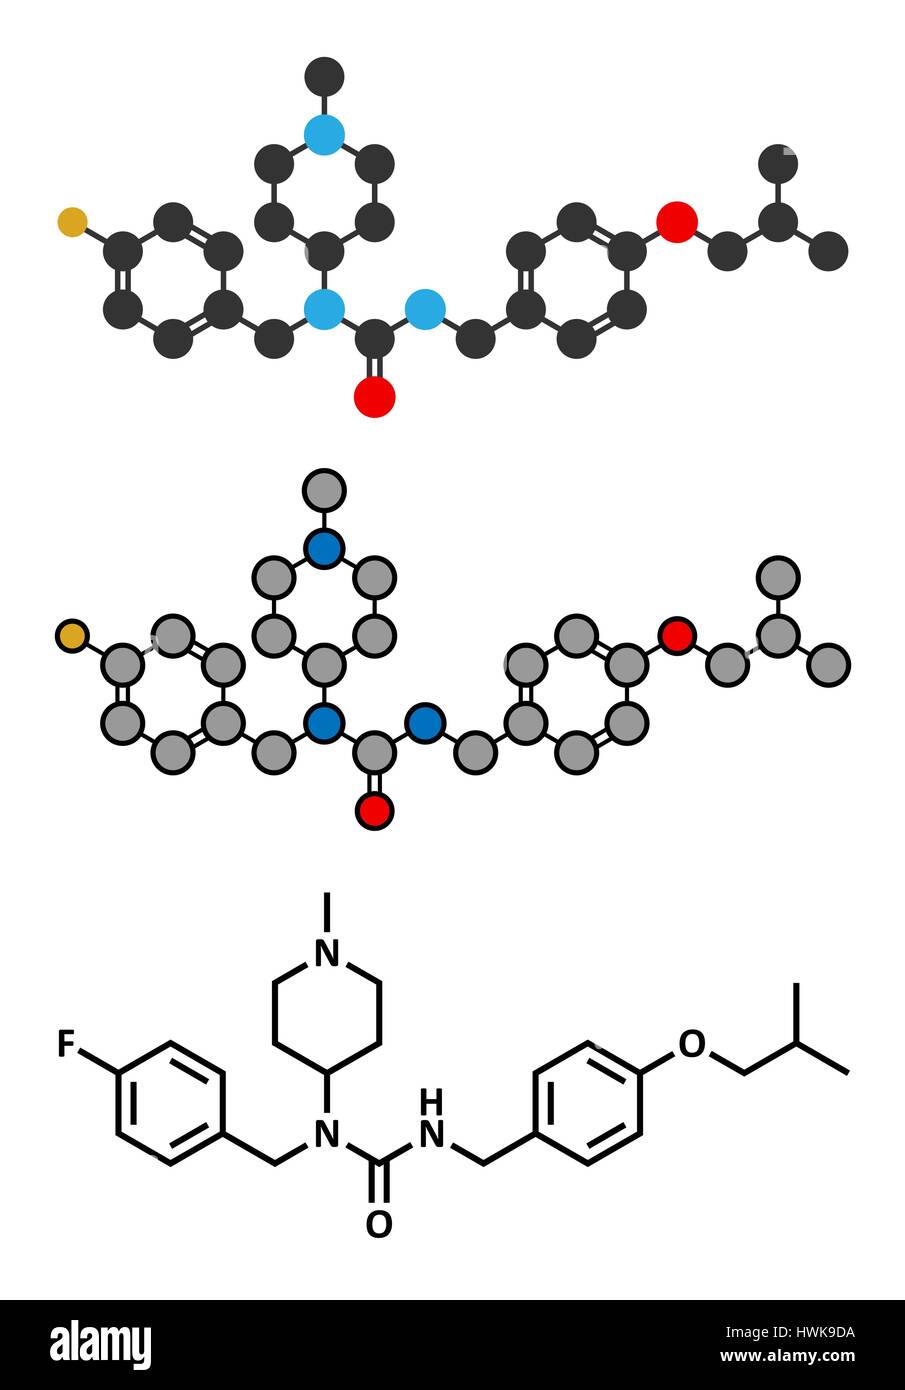 Pimavanserin atypische Antipsychotika Wirkstoffmolekül. Stilisierte 2D Renderings und konventionellen Skelettformel. Stock Vektor